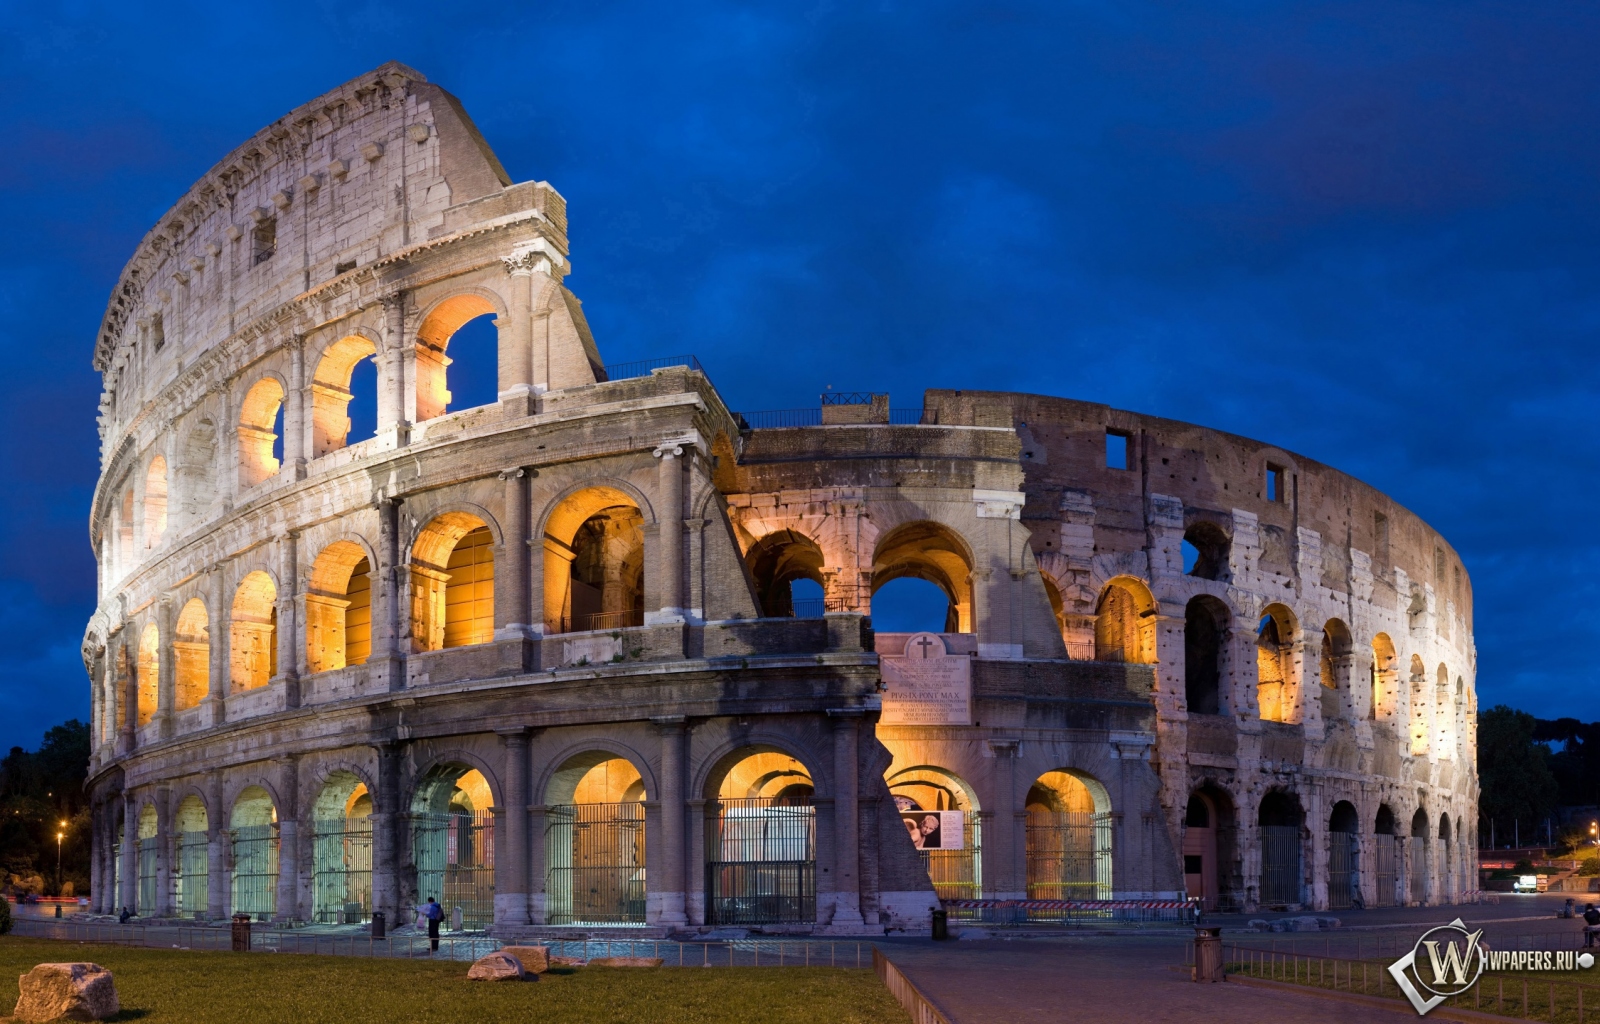 Colosseum in Rome 1600x1024